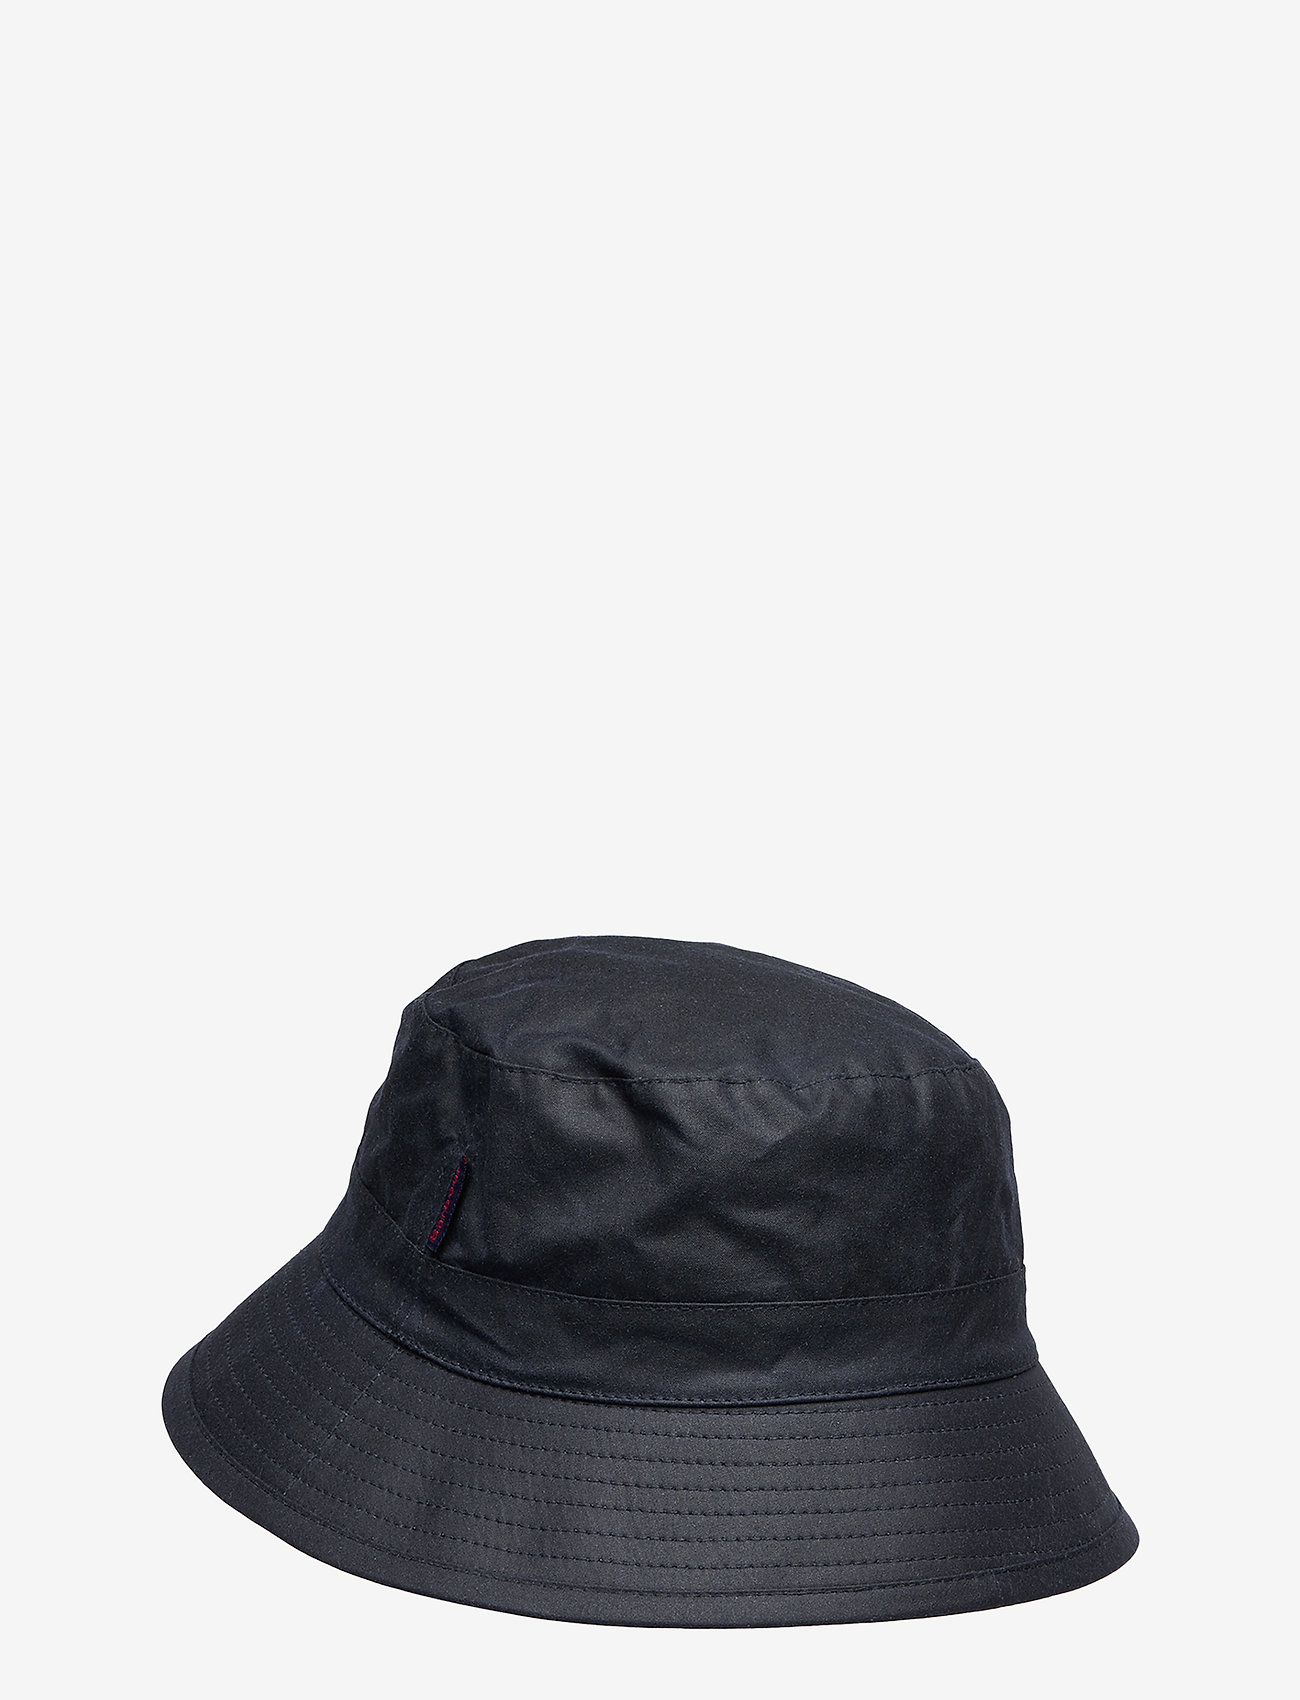 Barbour - Barbour Wax Bucket Hat - bucket hats - navy - 1